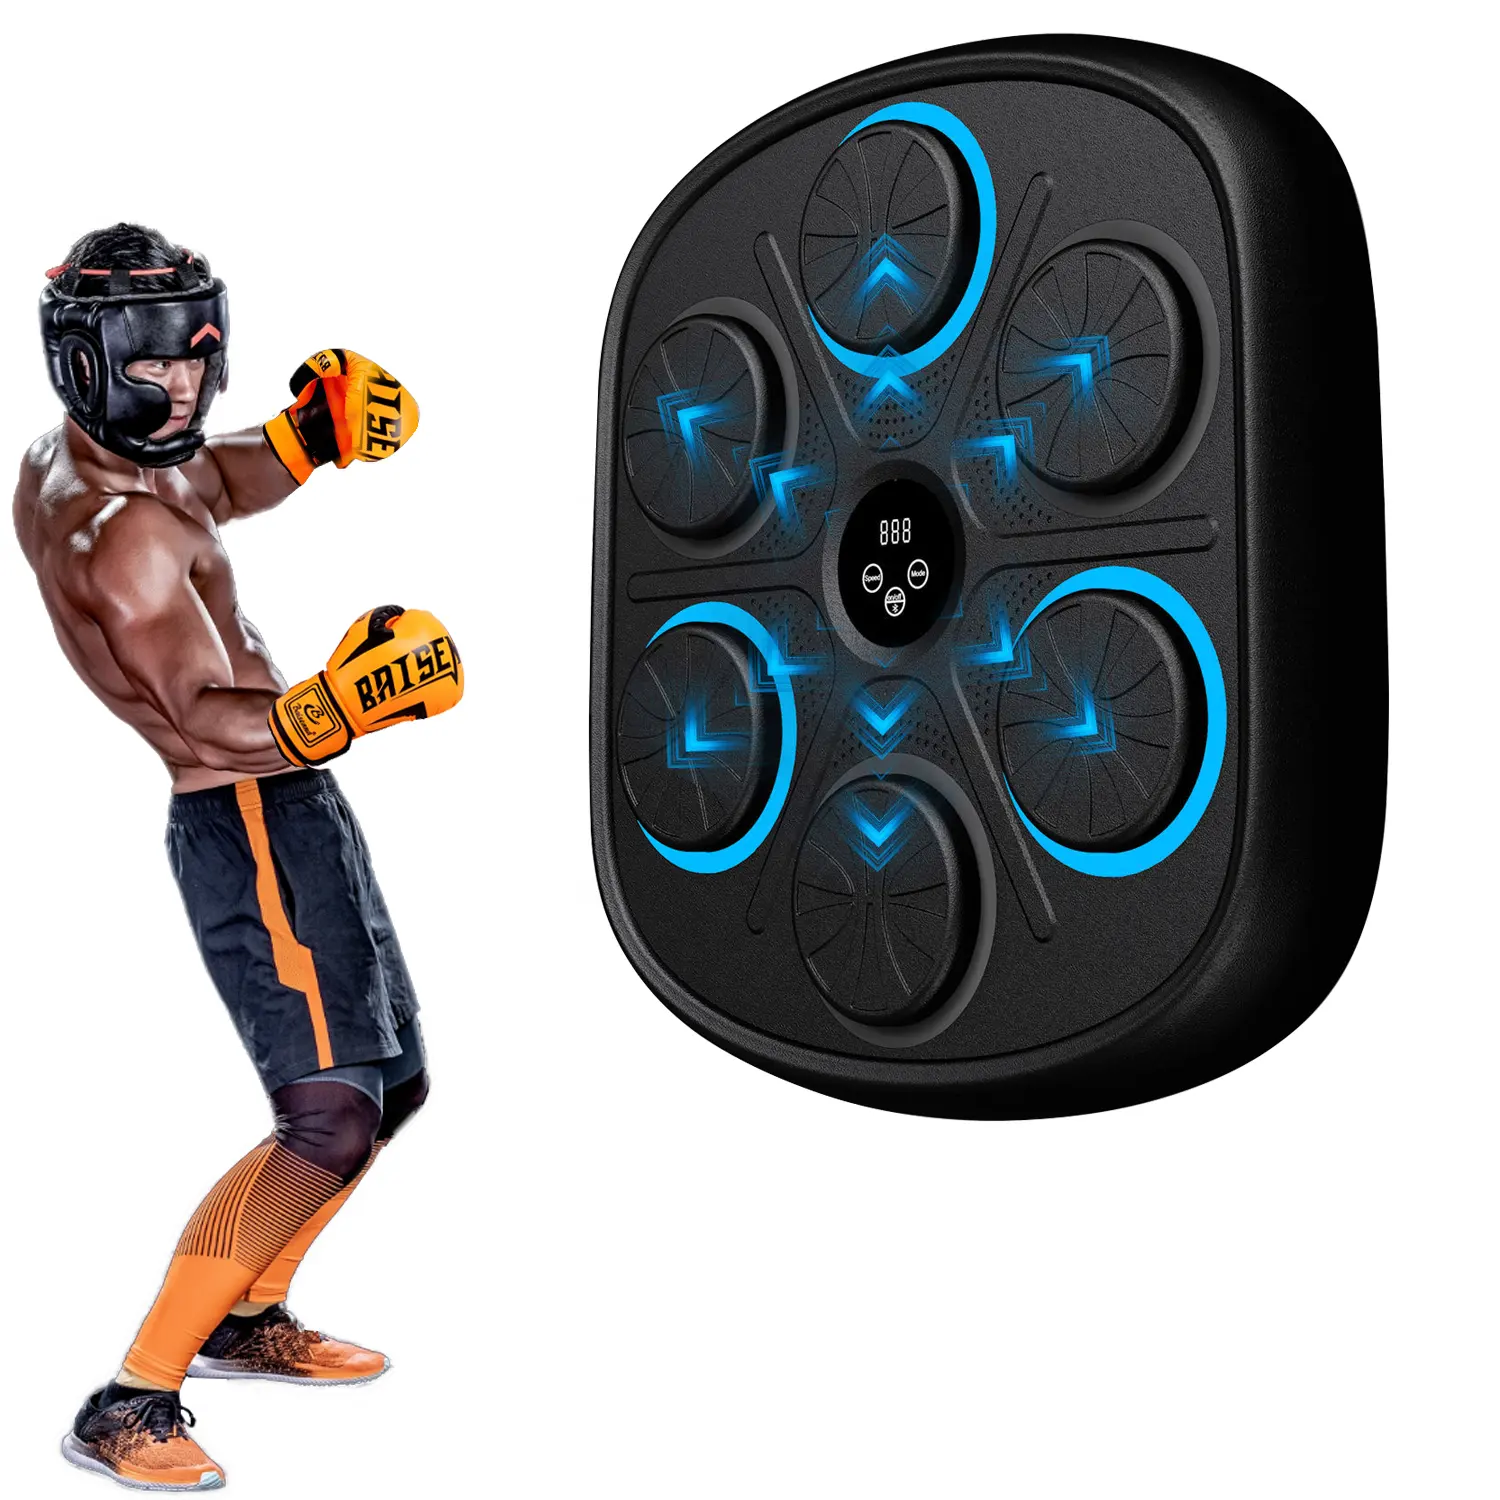 RS جديد من المصنع جهاز ملاكمة رقمي لشدّ الصدام والتدريب مركز ذكي للبالغين الهدف الذكي جهاز ملاكمة موسيقى للتدريب على الرصاص